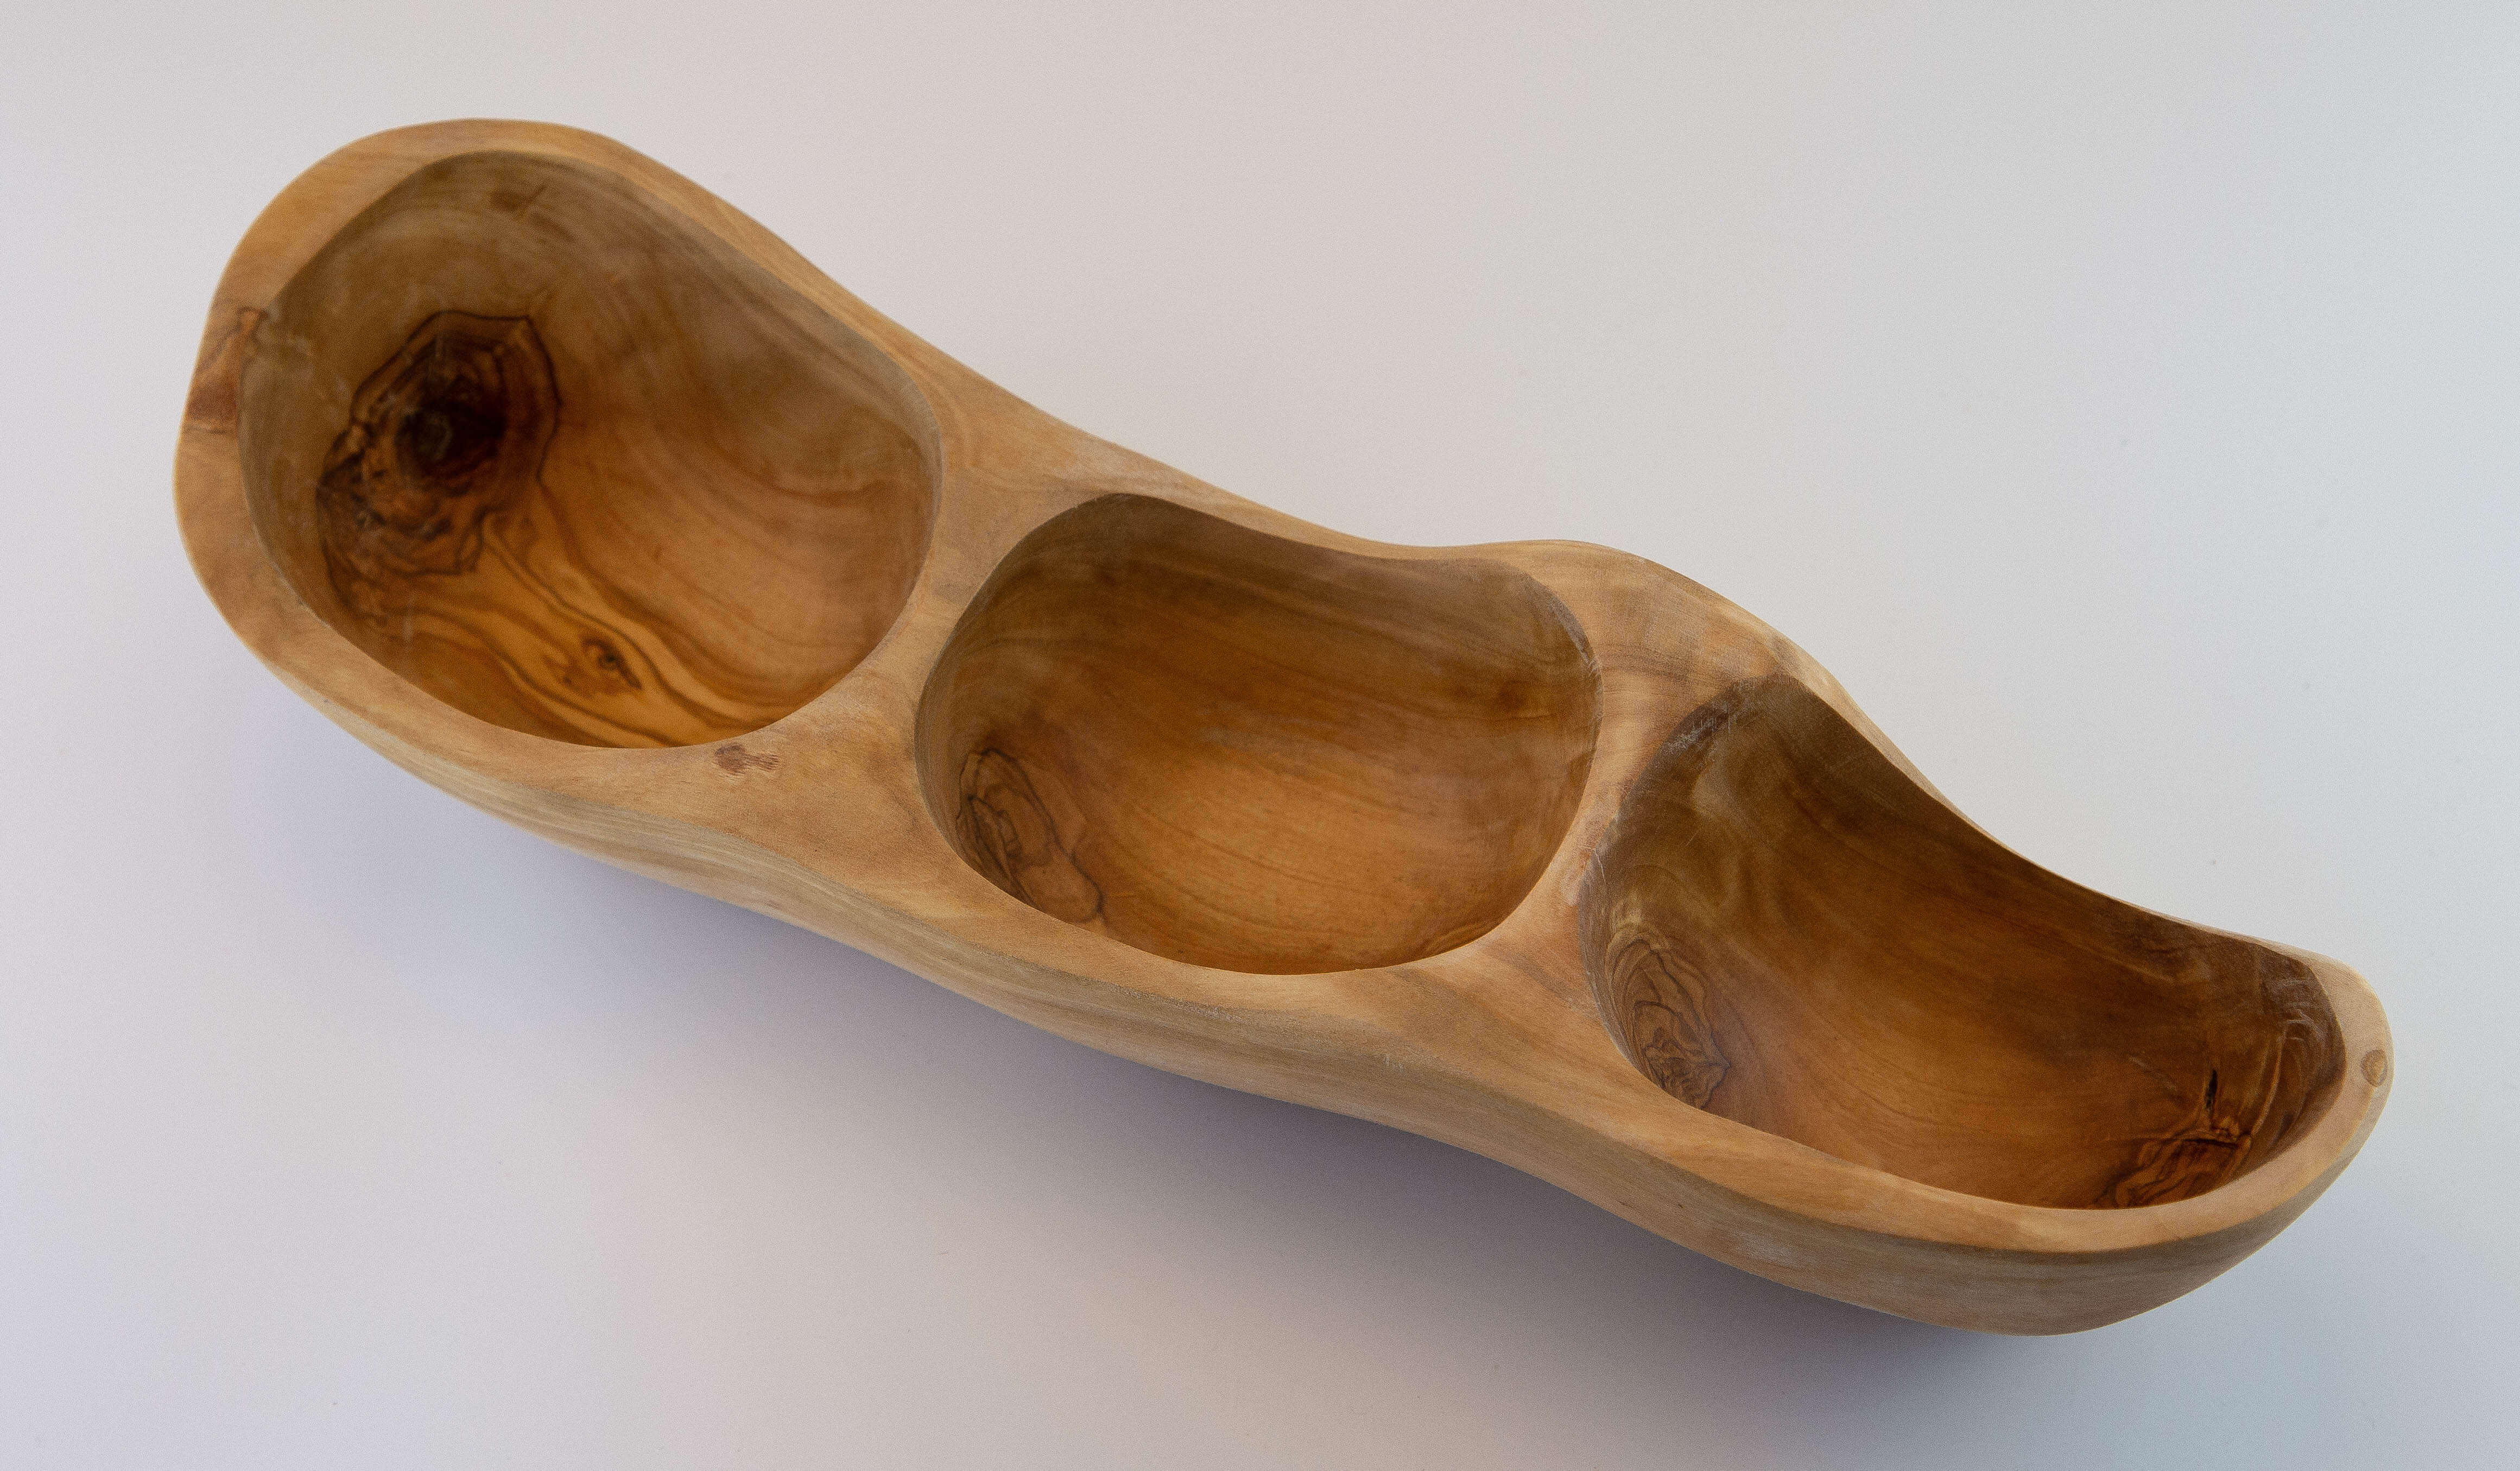 Snack scodella in legno d'olivo rustico con 3 scomparti (30-35 cm)